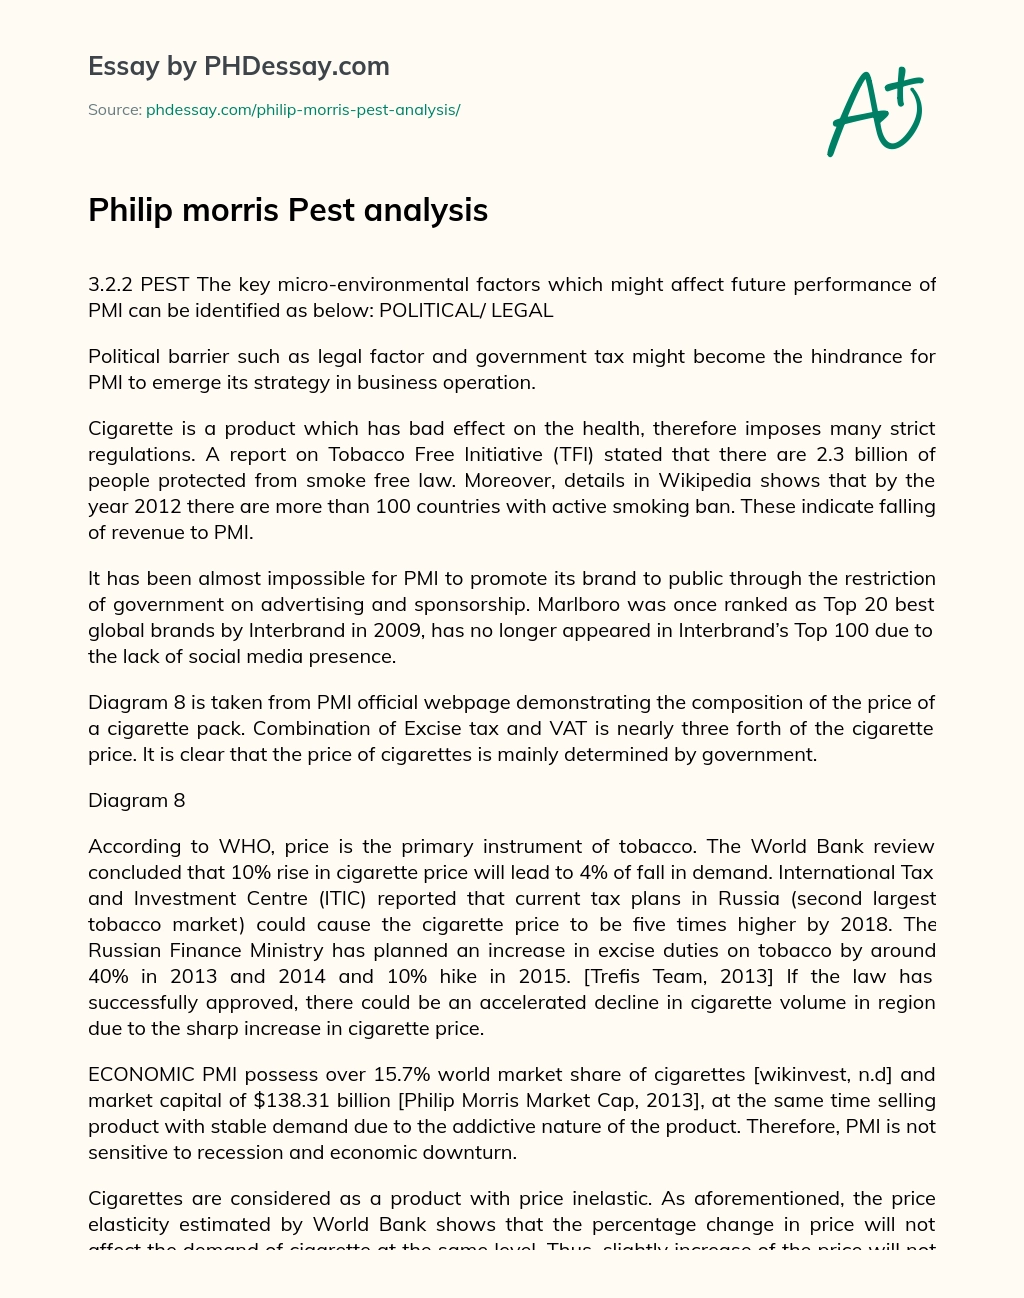 Philip morris Pest analysis essay